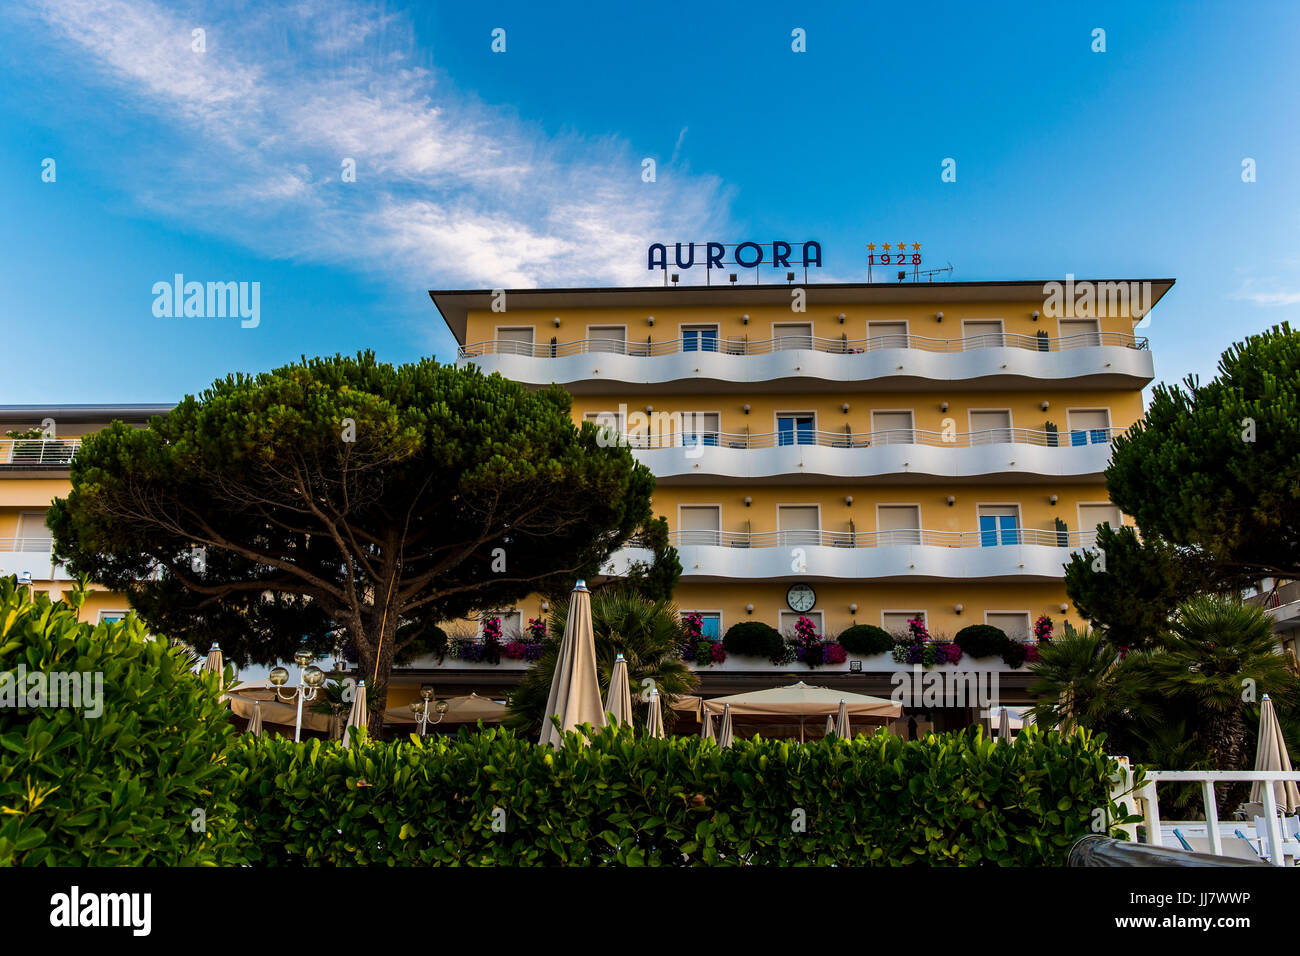 Vista anteriore del Aurora 1928 hotel sulla spiaggia di Jesolo, Italia. Foto Stock